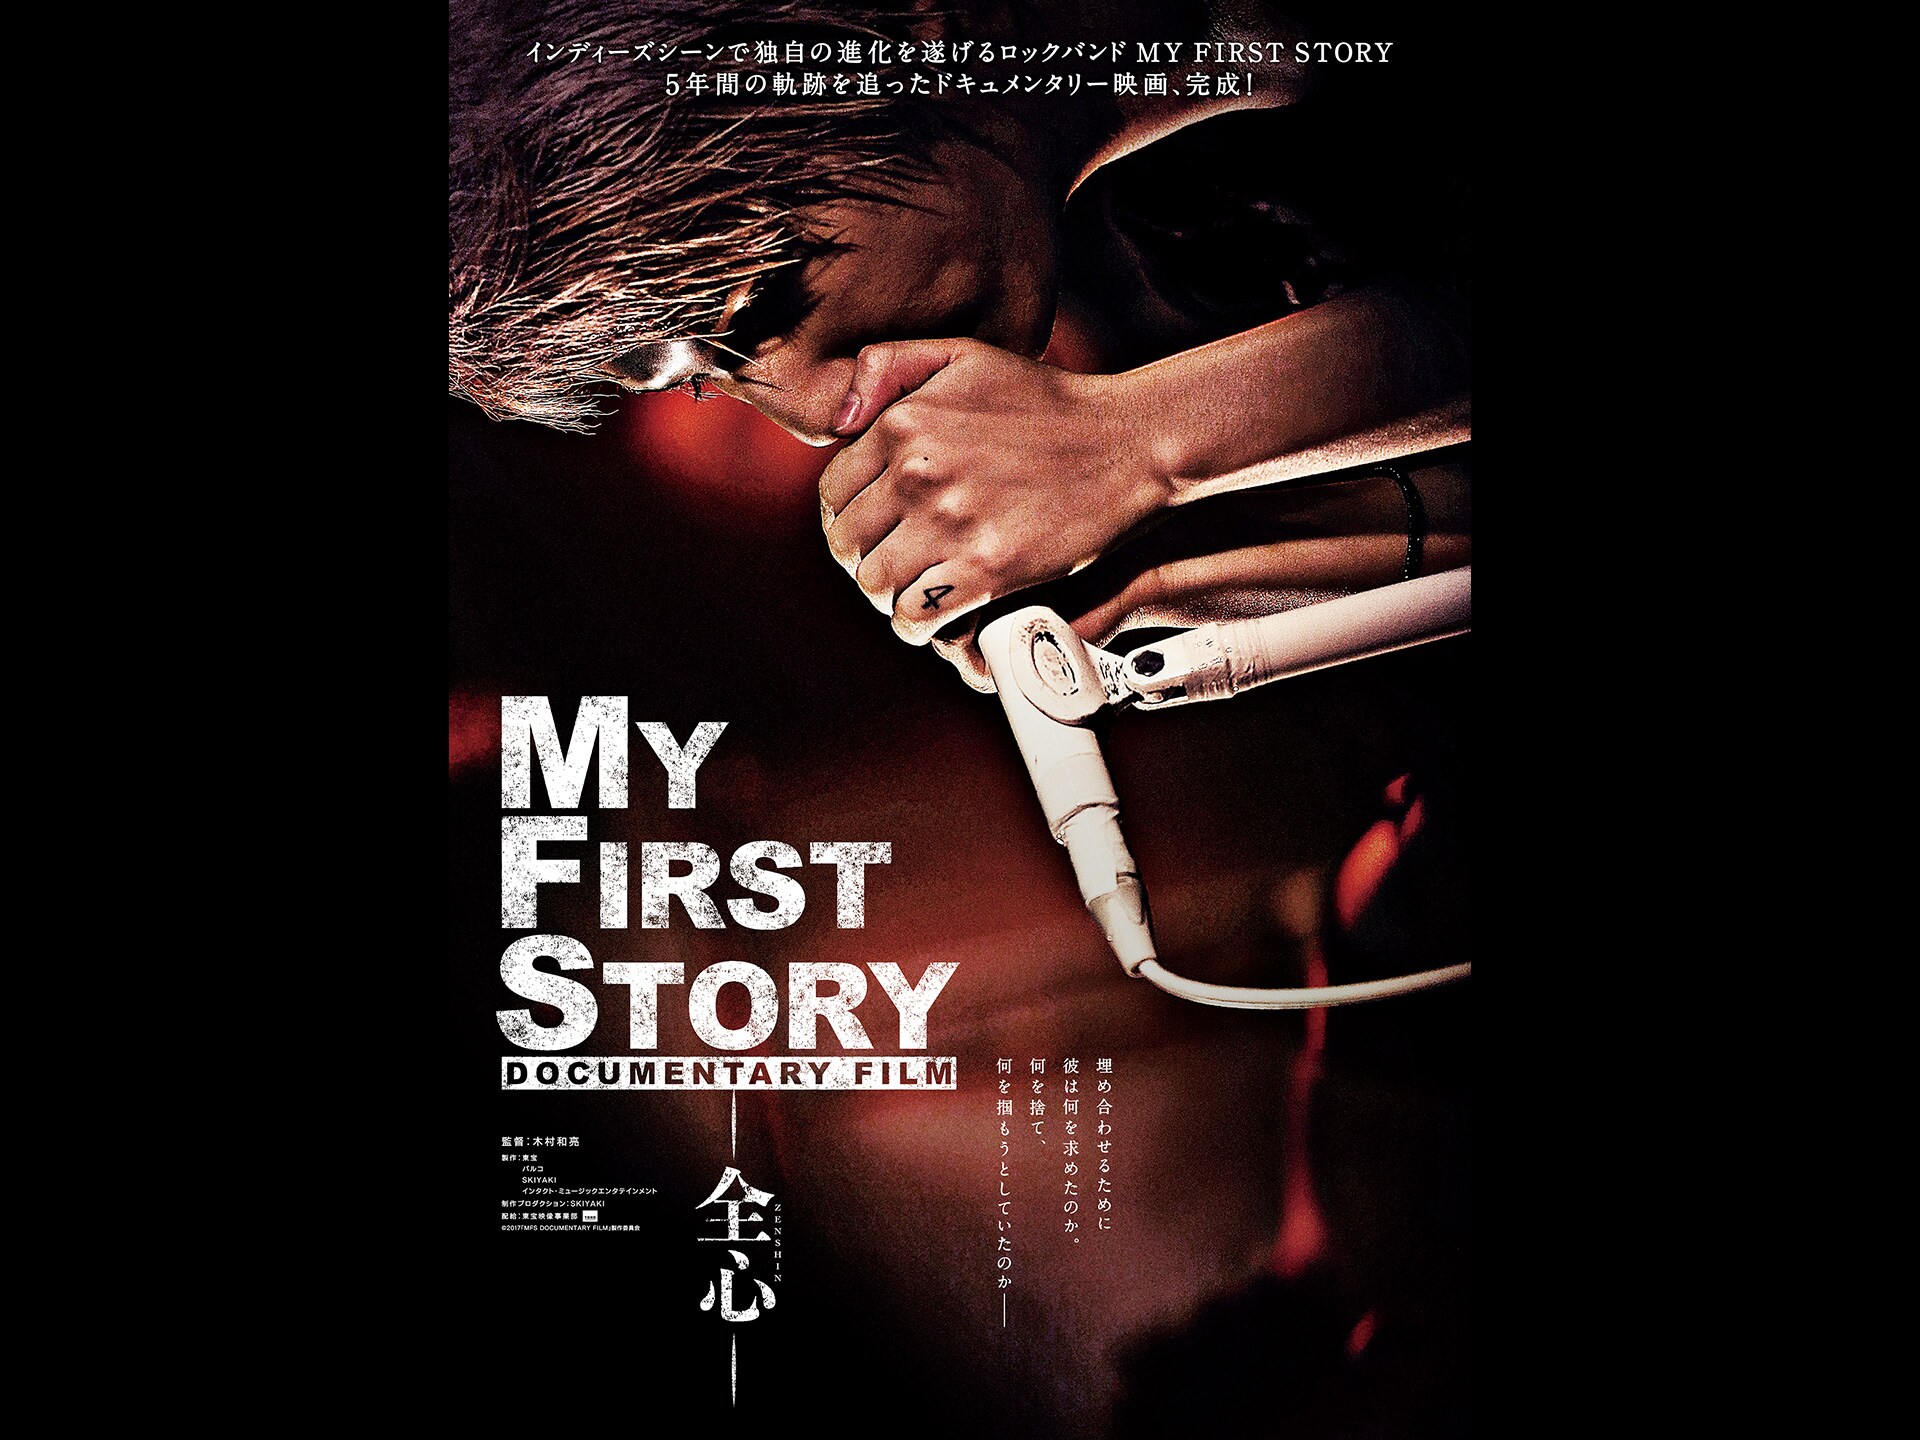 無料視聴あり 映画 My First Story Documentary Film 全心 の動画 初月無料 動画配信サービスのビデオマーケット